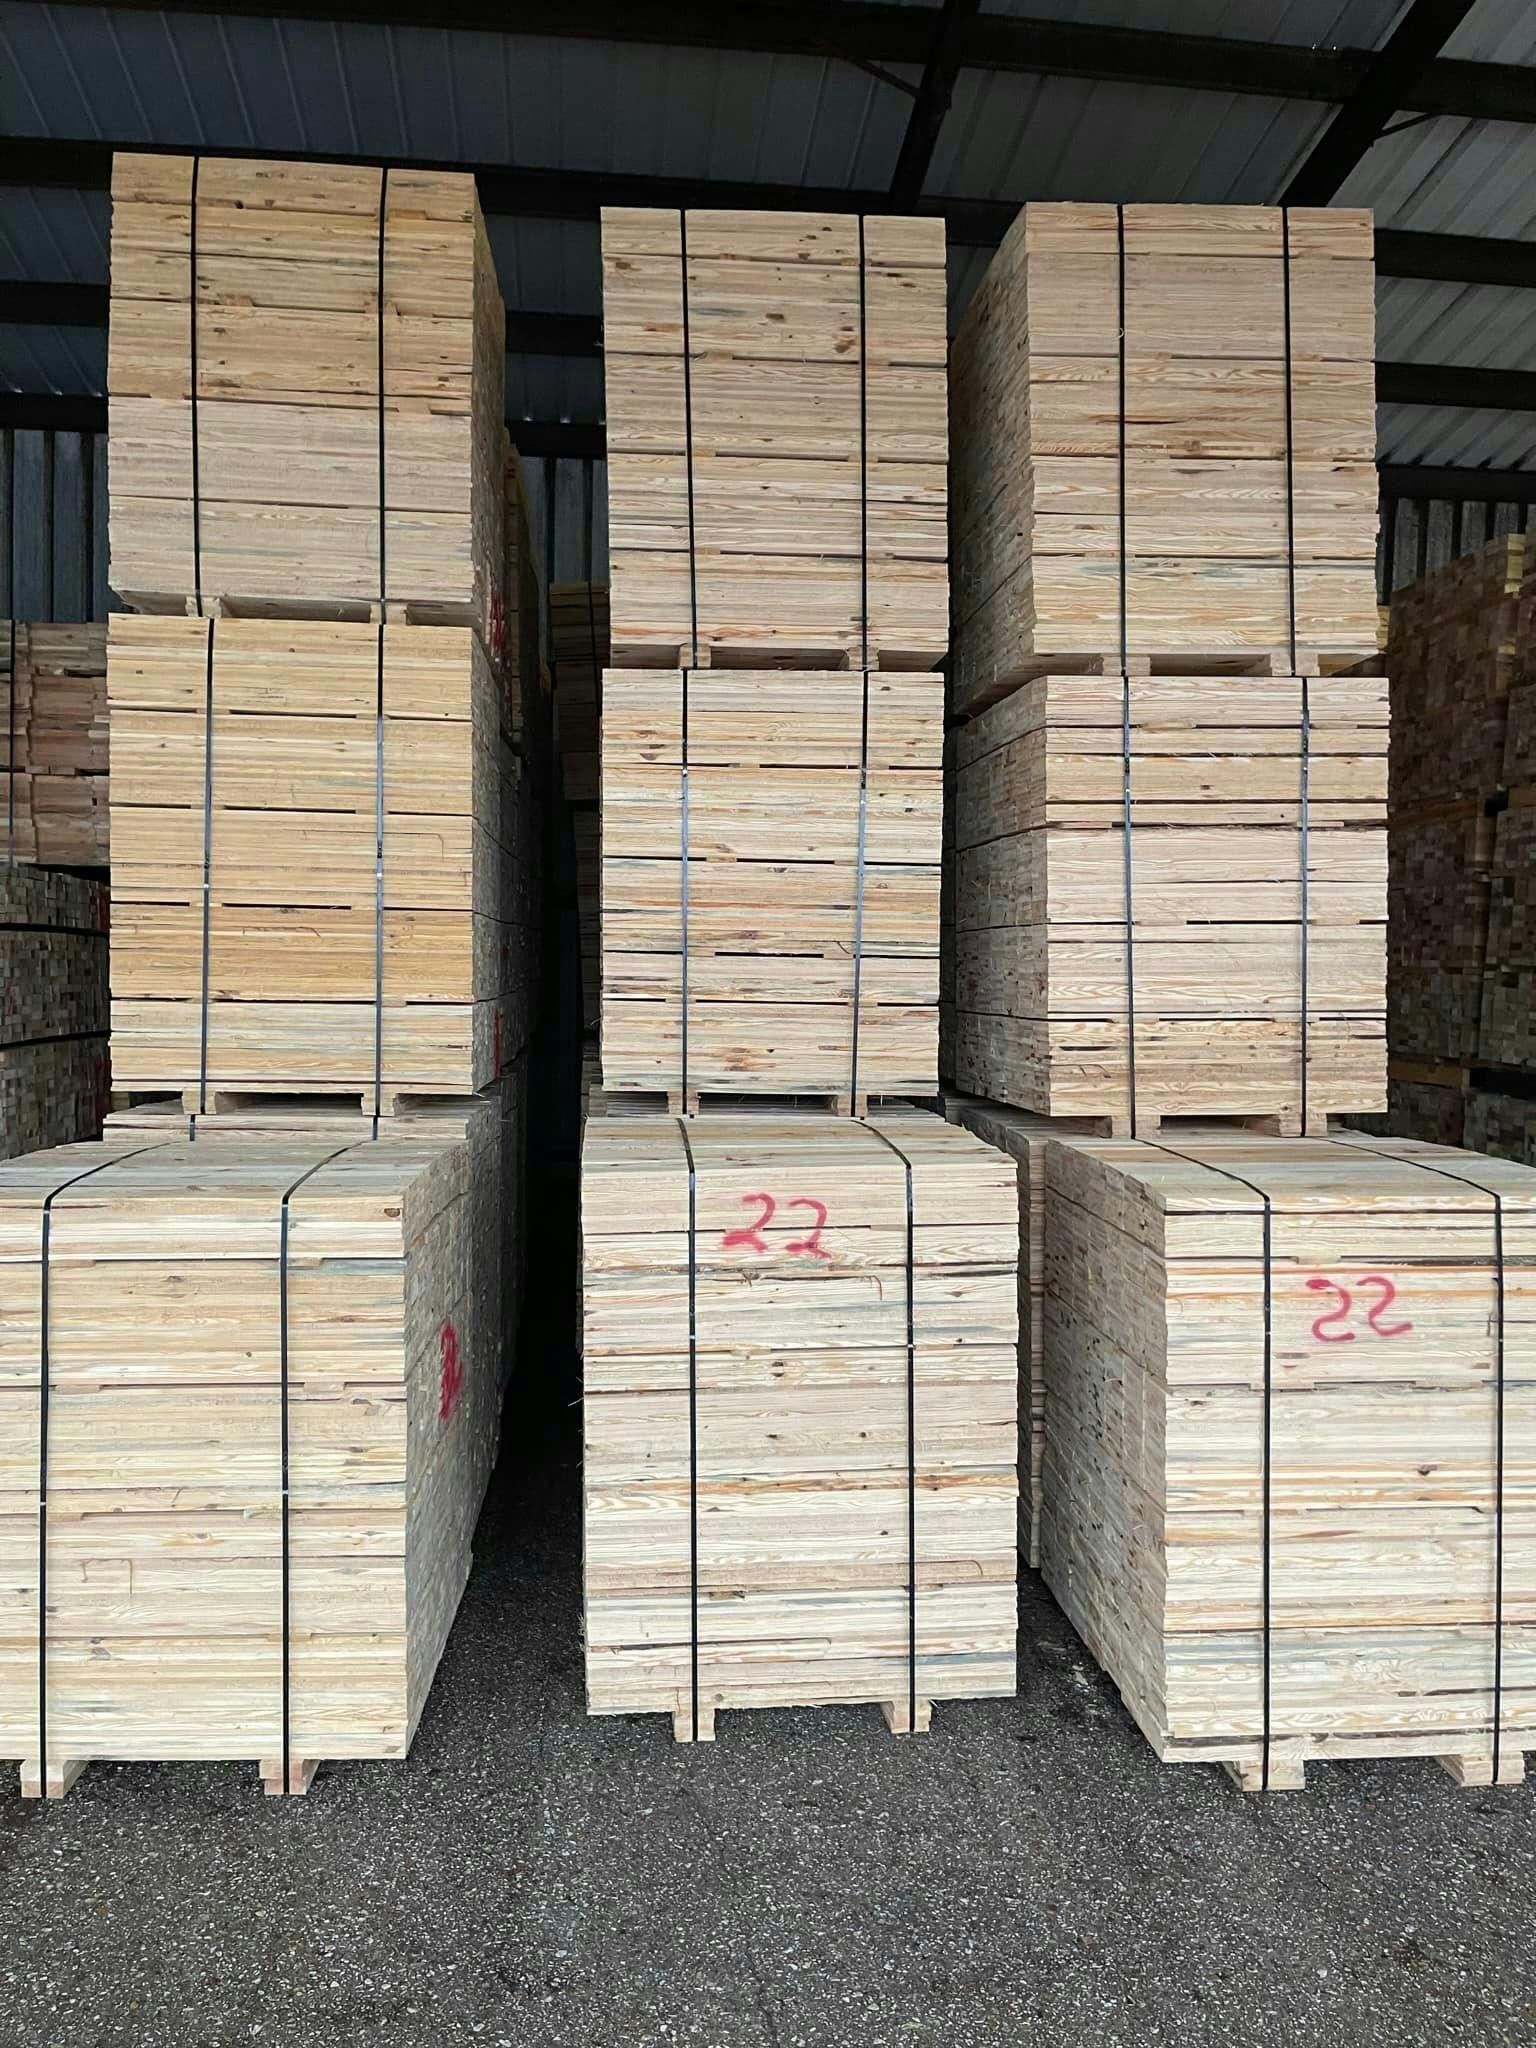 40 inch Pine Deck Boards - Detroit MI 48209